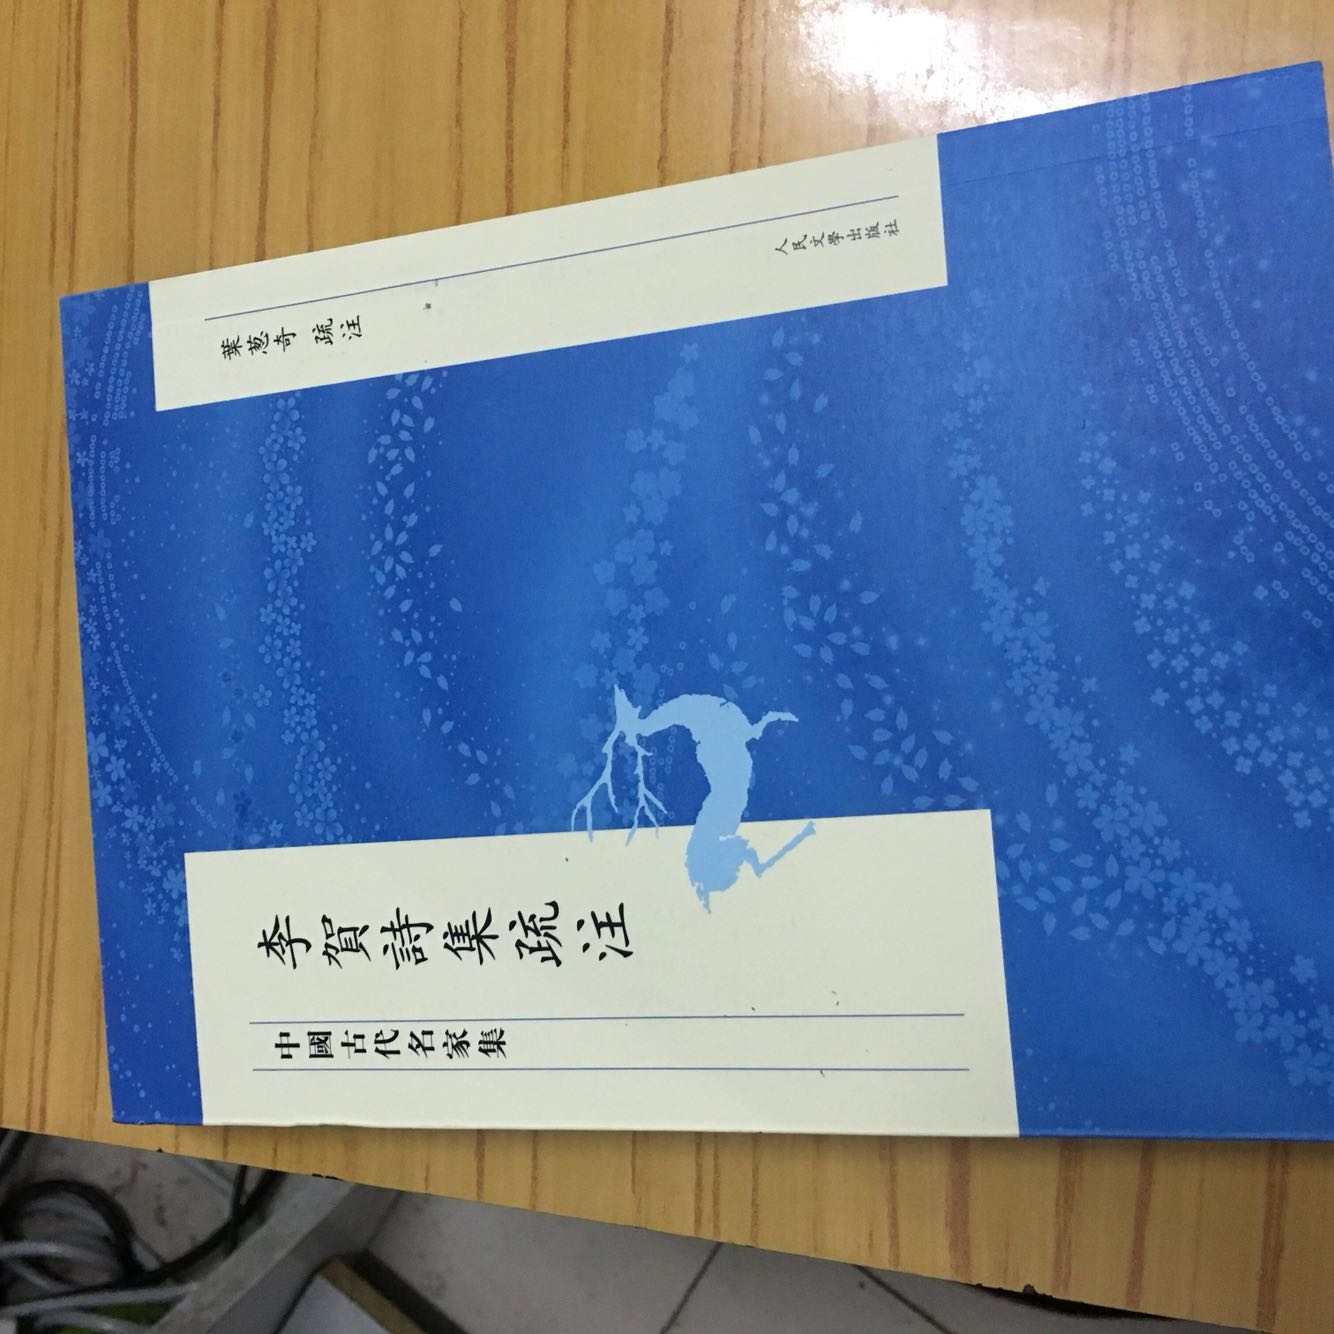 人民文学出版社中国古代名家集系列丛书，这套丛书的质量都非常好。